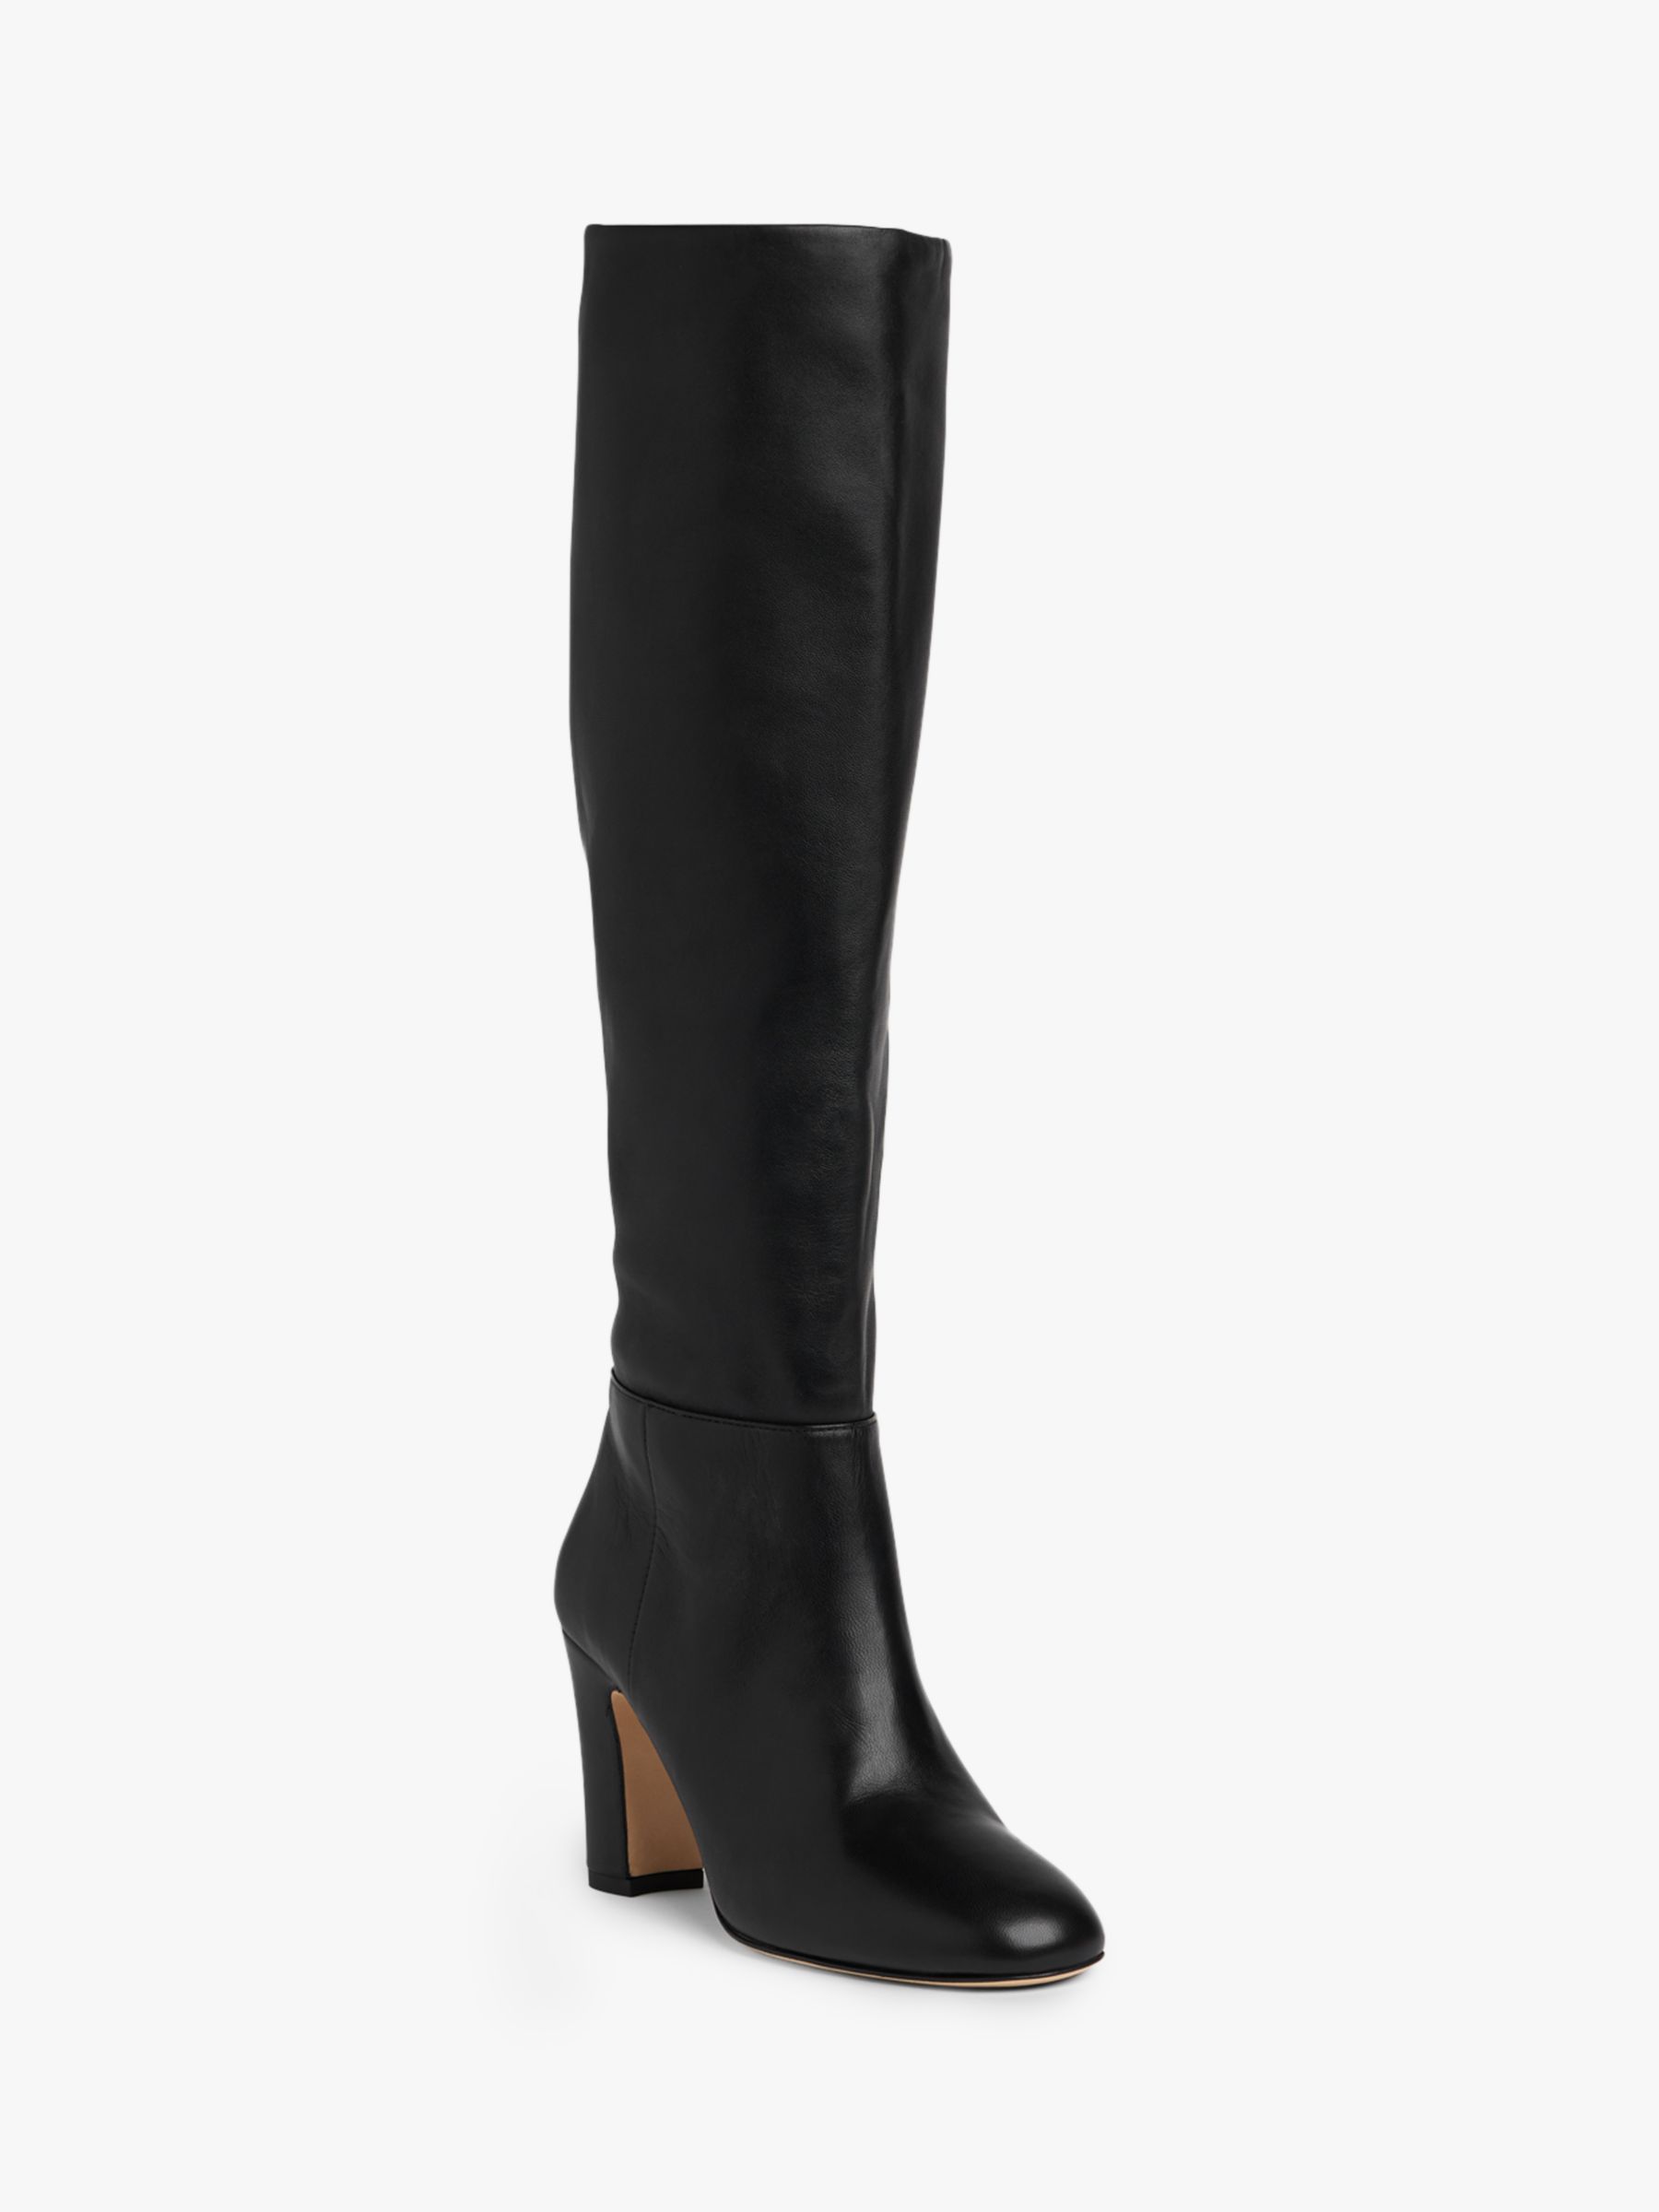 L.K.Bennett Kristen Leather Knee High Boots, Black, 2